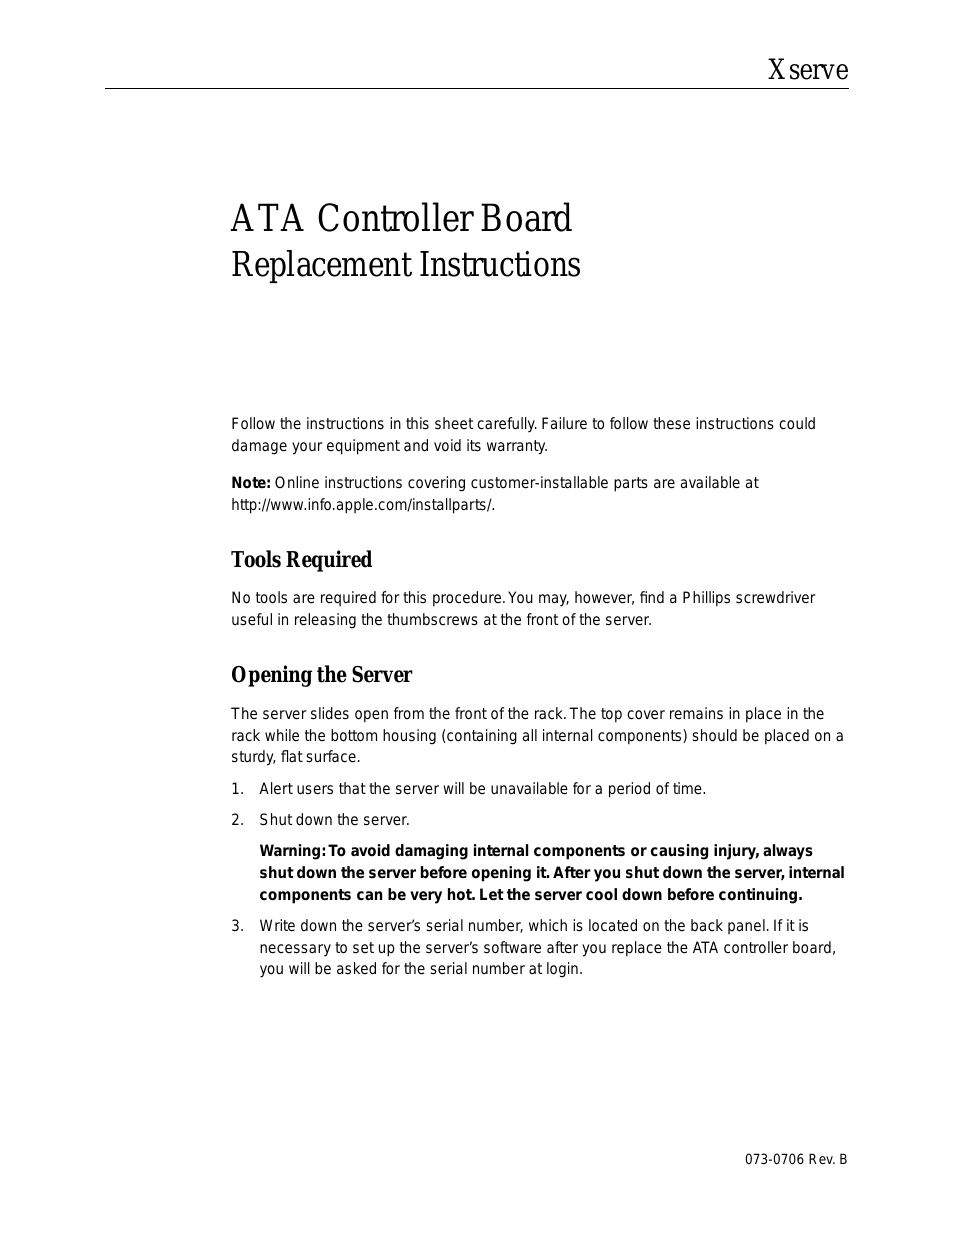 ATA Controller Board